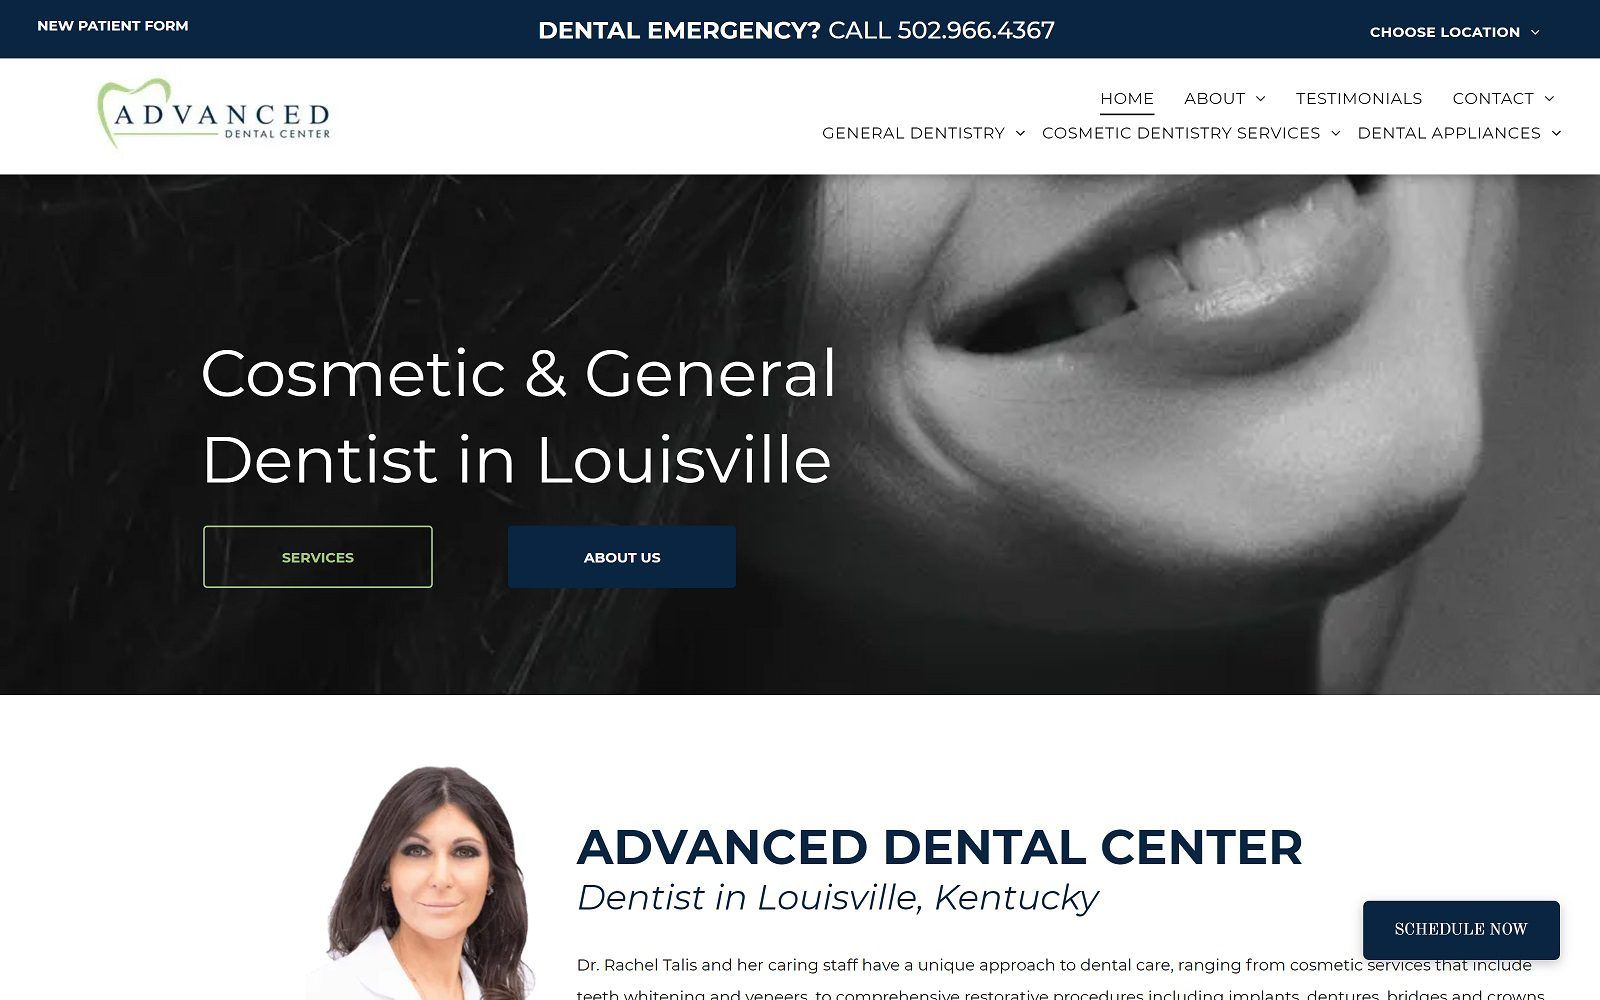 The screenshot of advanced dental center website